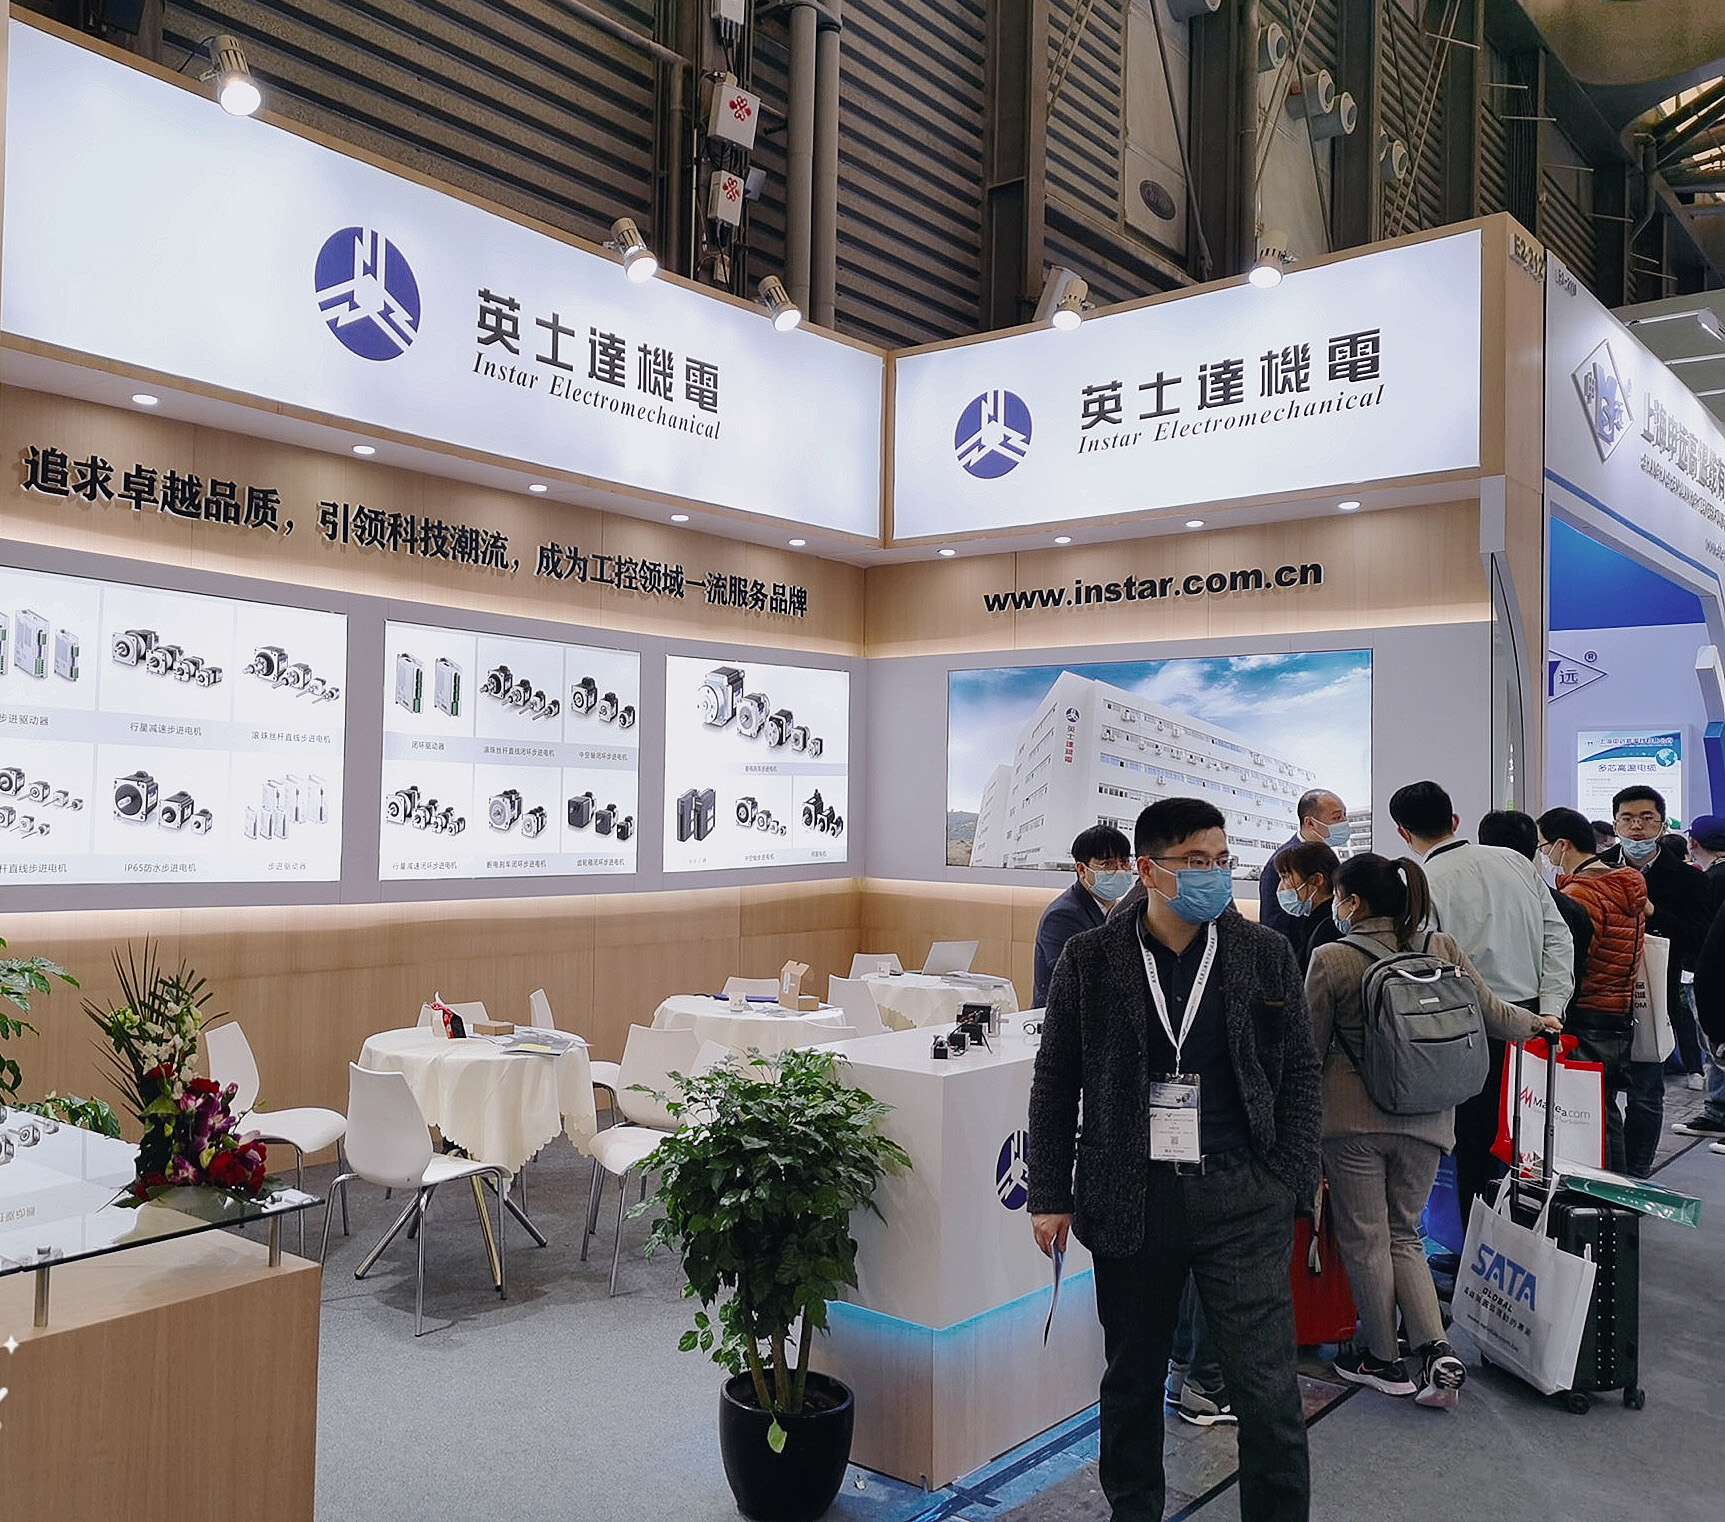 英士达机电与你相约慕尼黑上海电子生产设备展